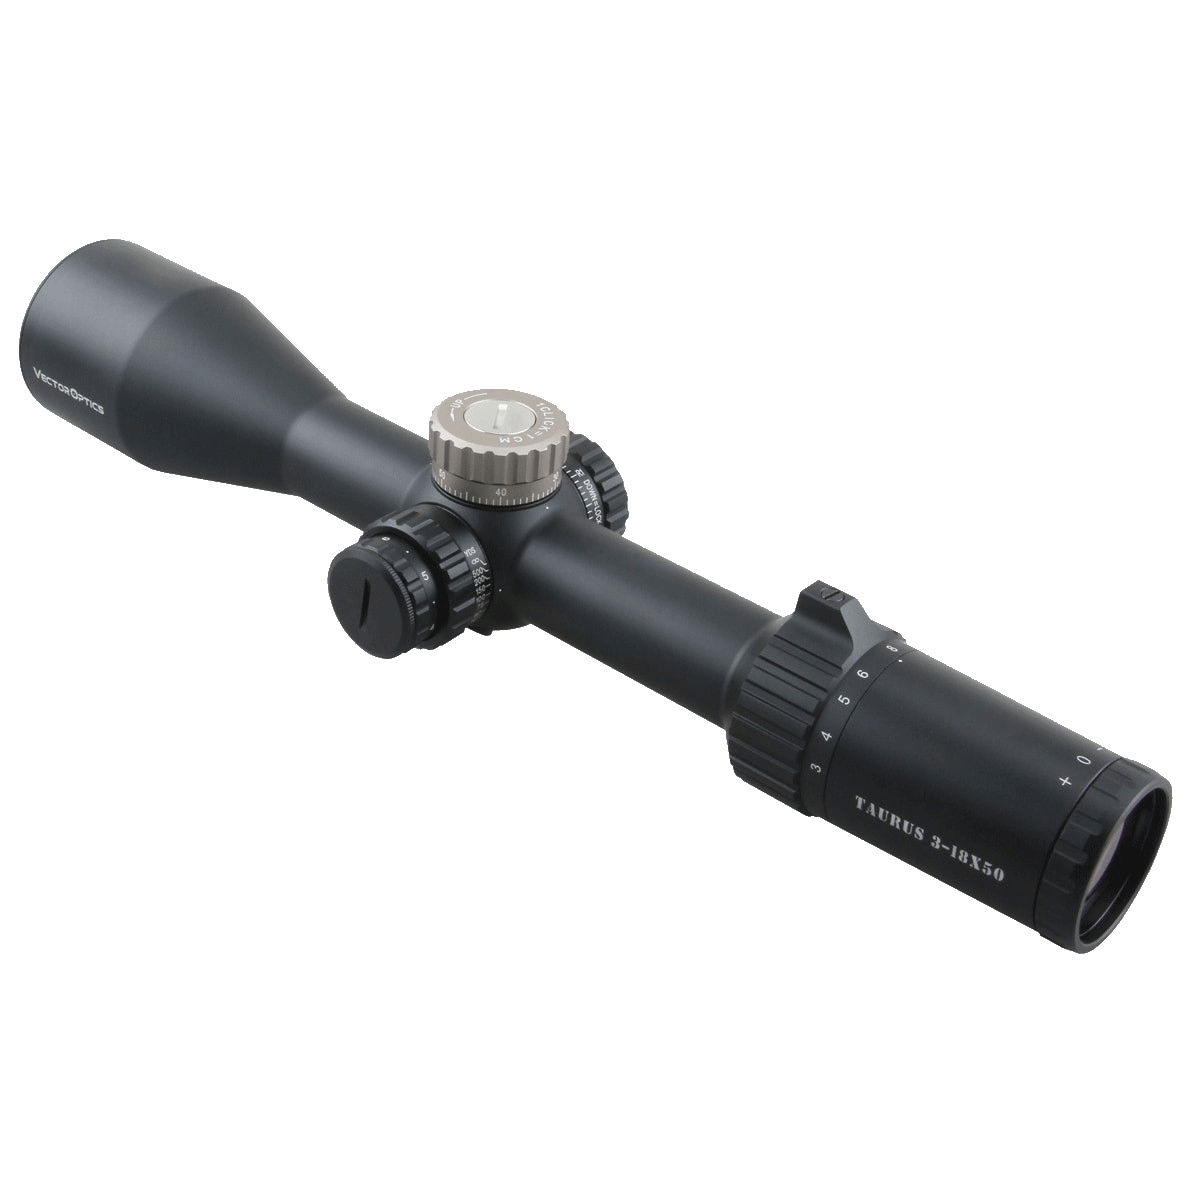 Taurus 3-18x50FFP Riflescope